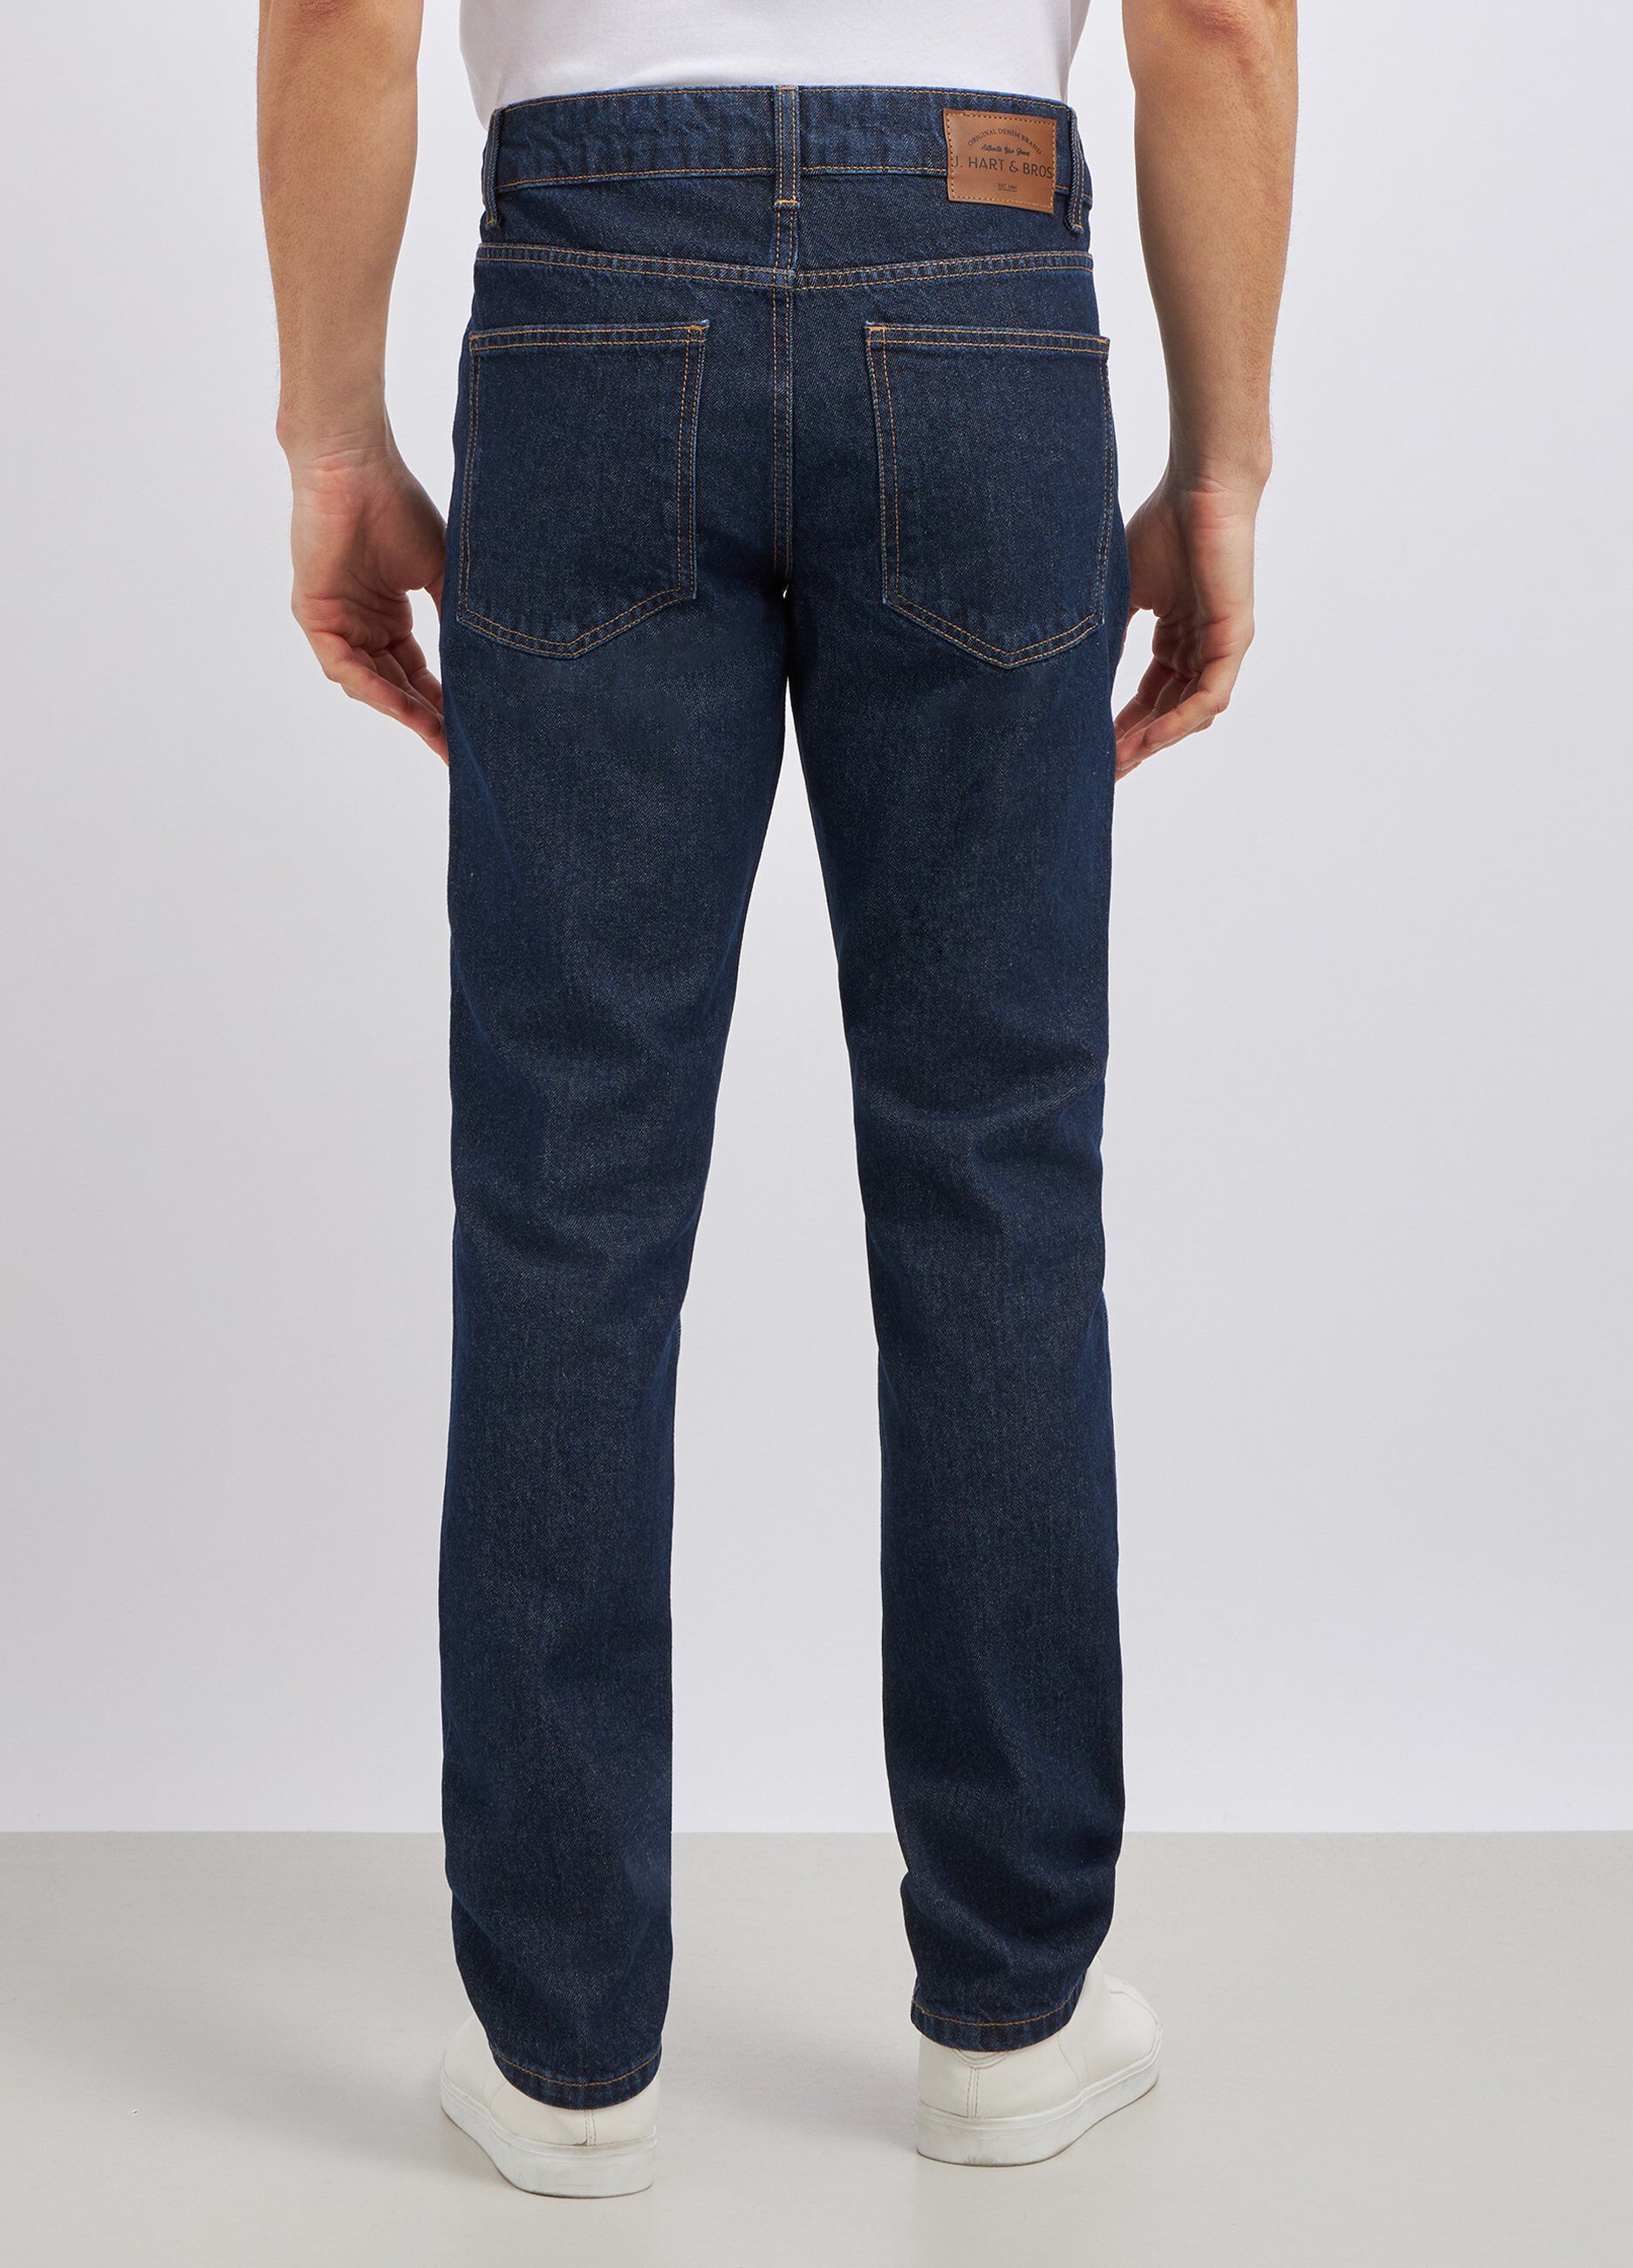 Jeans modello 5 tasche in puro cotone uomo_2